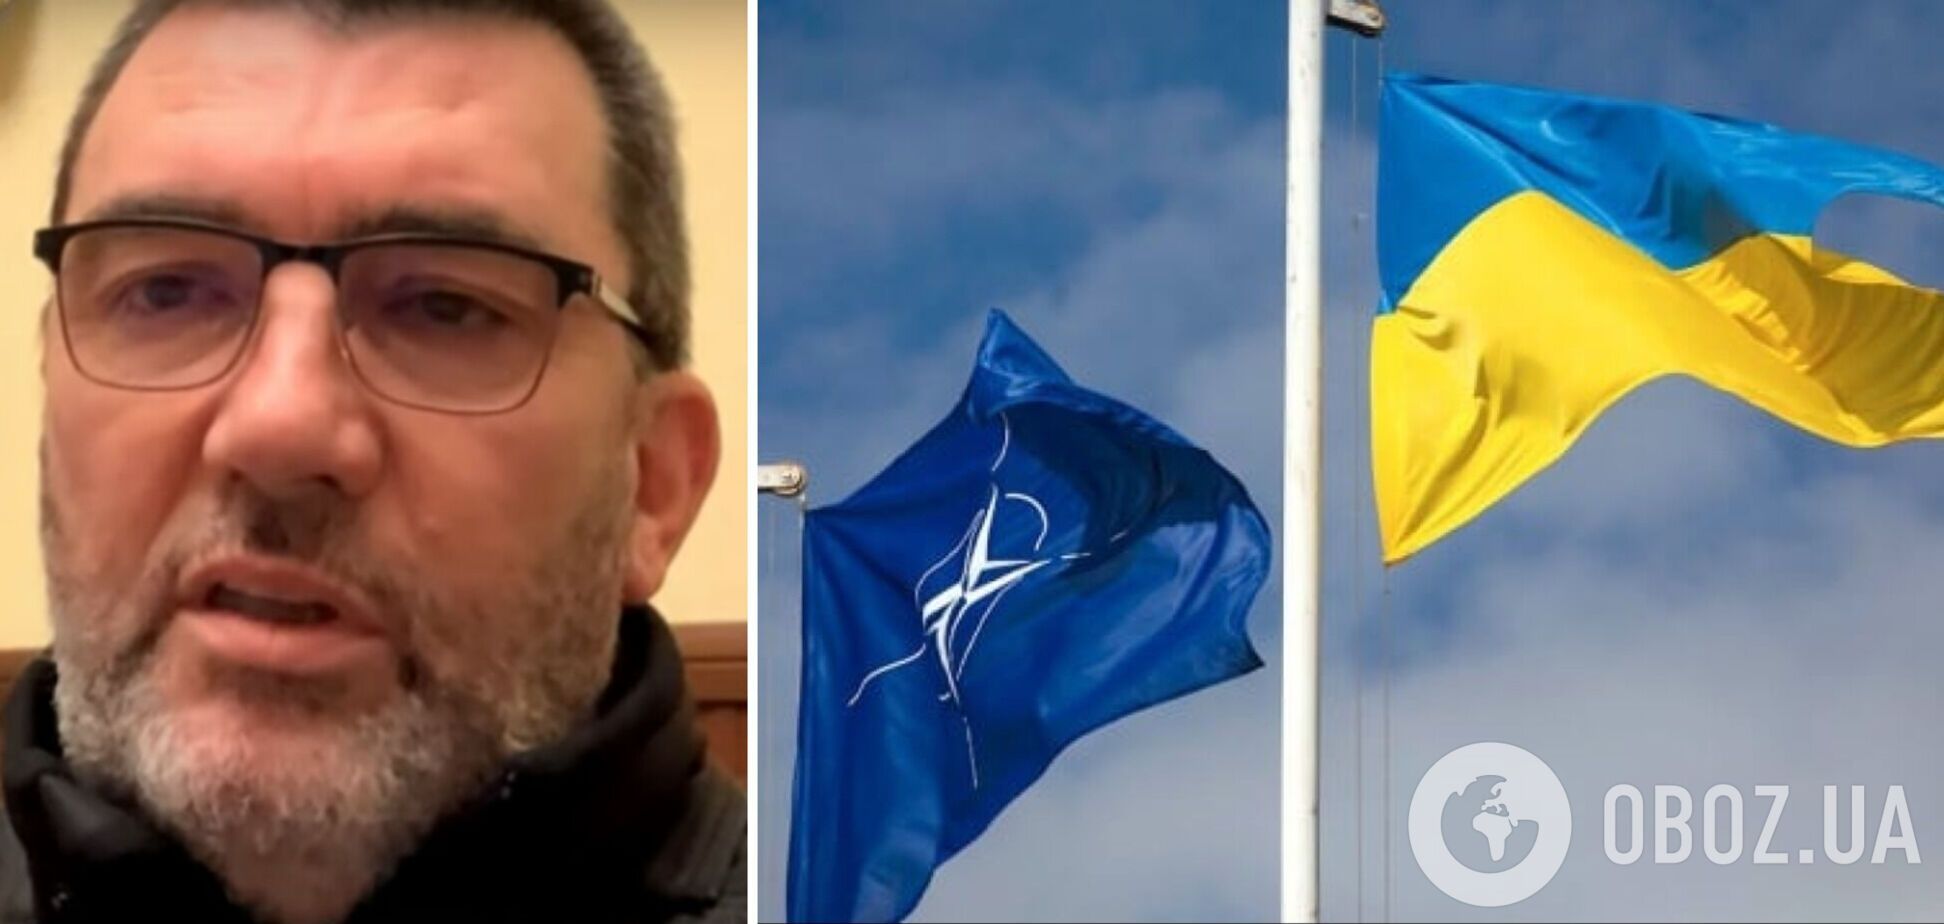 Данилов рассказал о тайных визитах зарубежных политиков в Киев